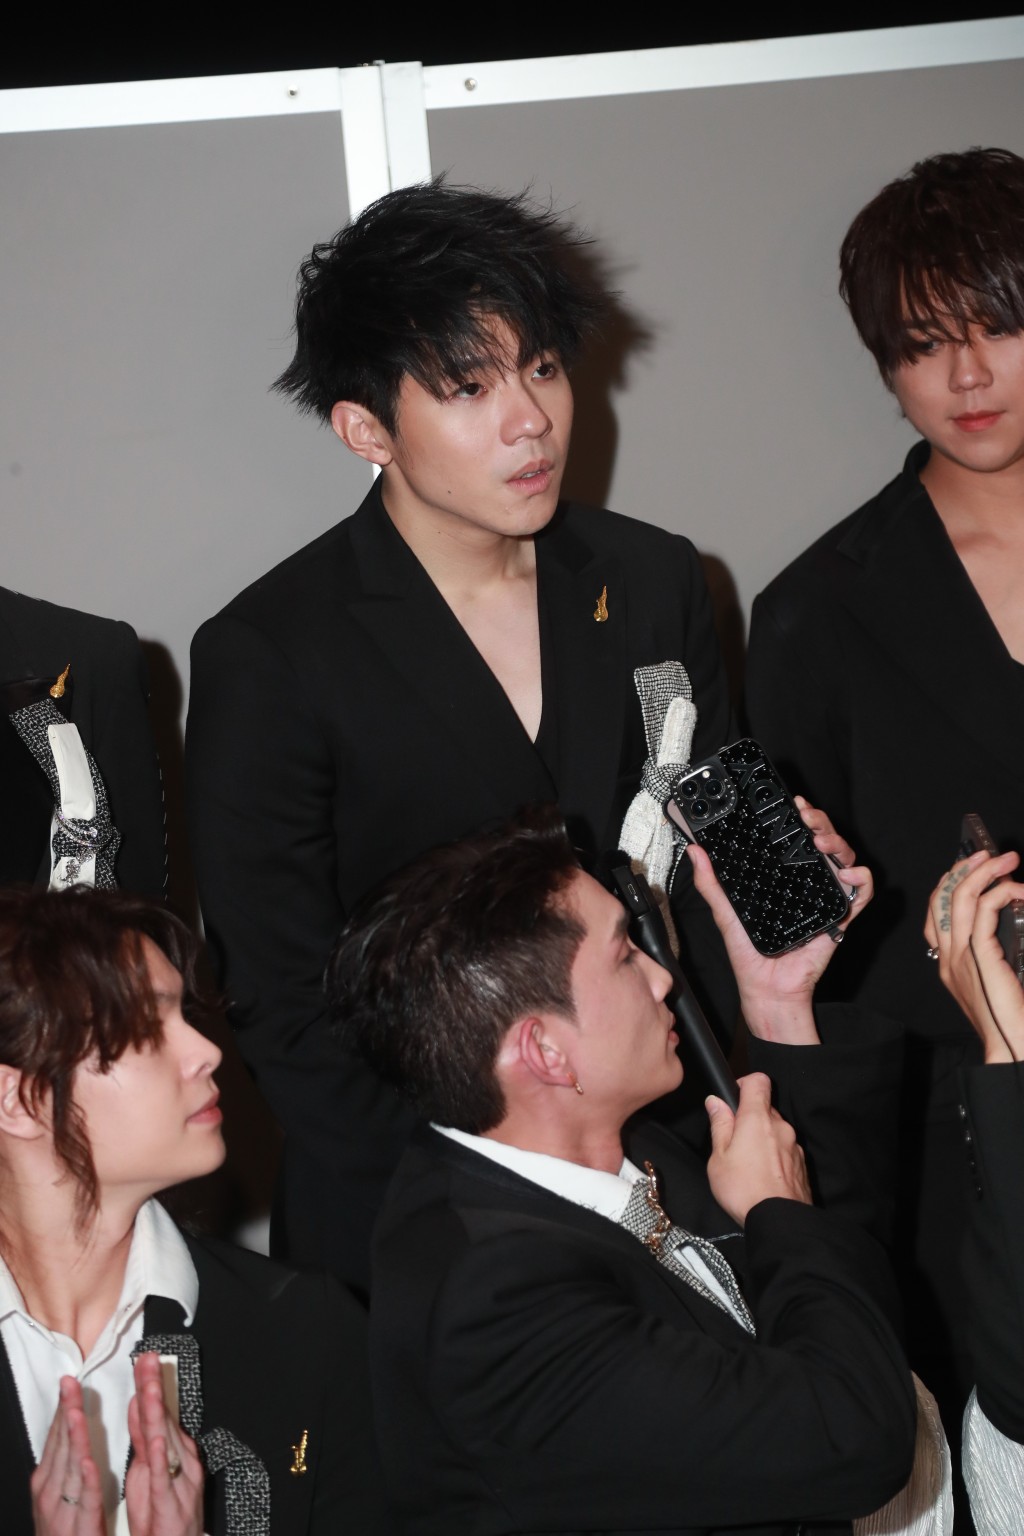 Ian陈卓贤成为首位夺得「叱咤男歌手」奖项的成员。